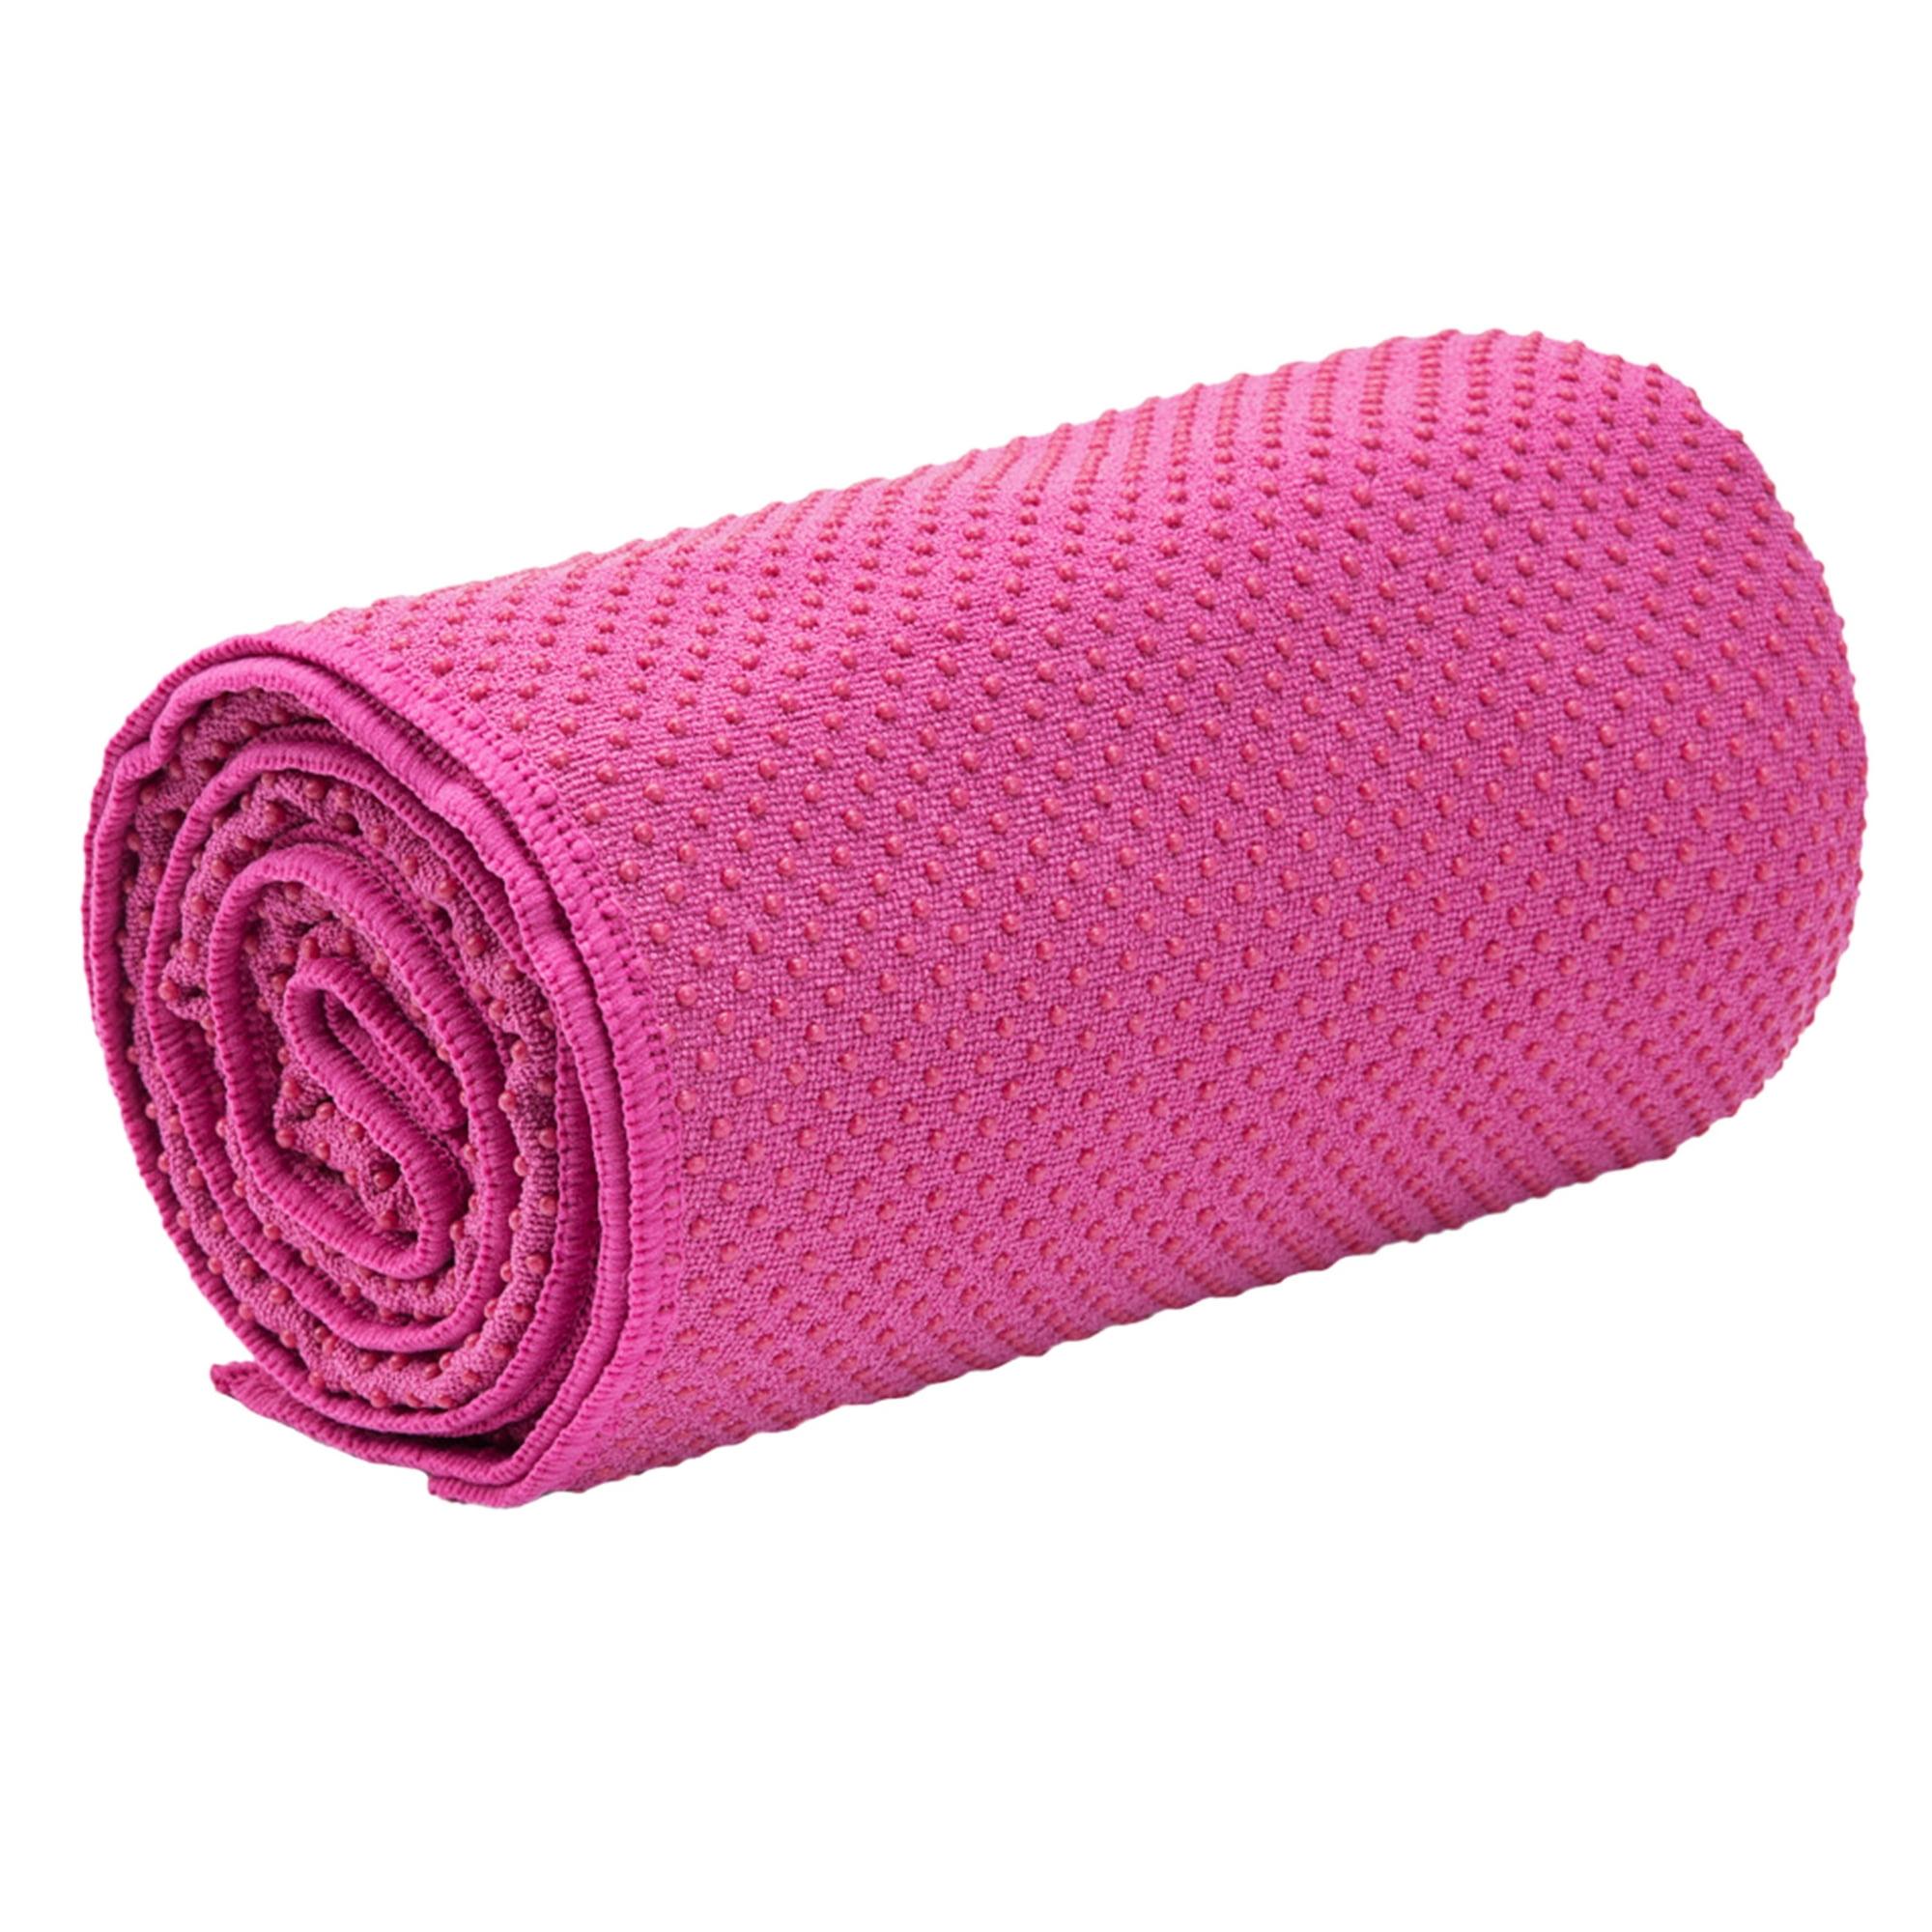 Comprar Esterilla de Yoga profesional, toalla antideslizante, absorbente de  sudor, toalla larga para Pilates, entrenamiento, Yoga caliente